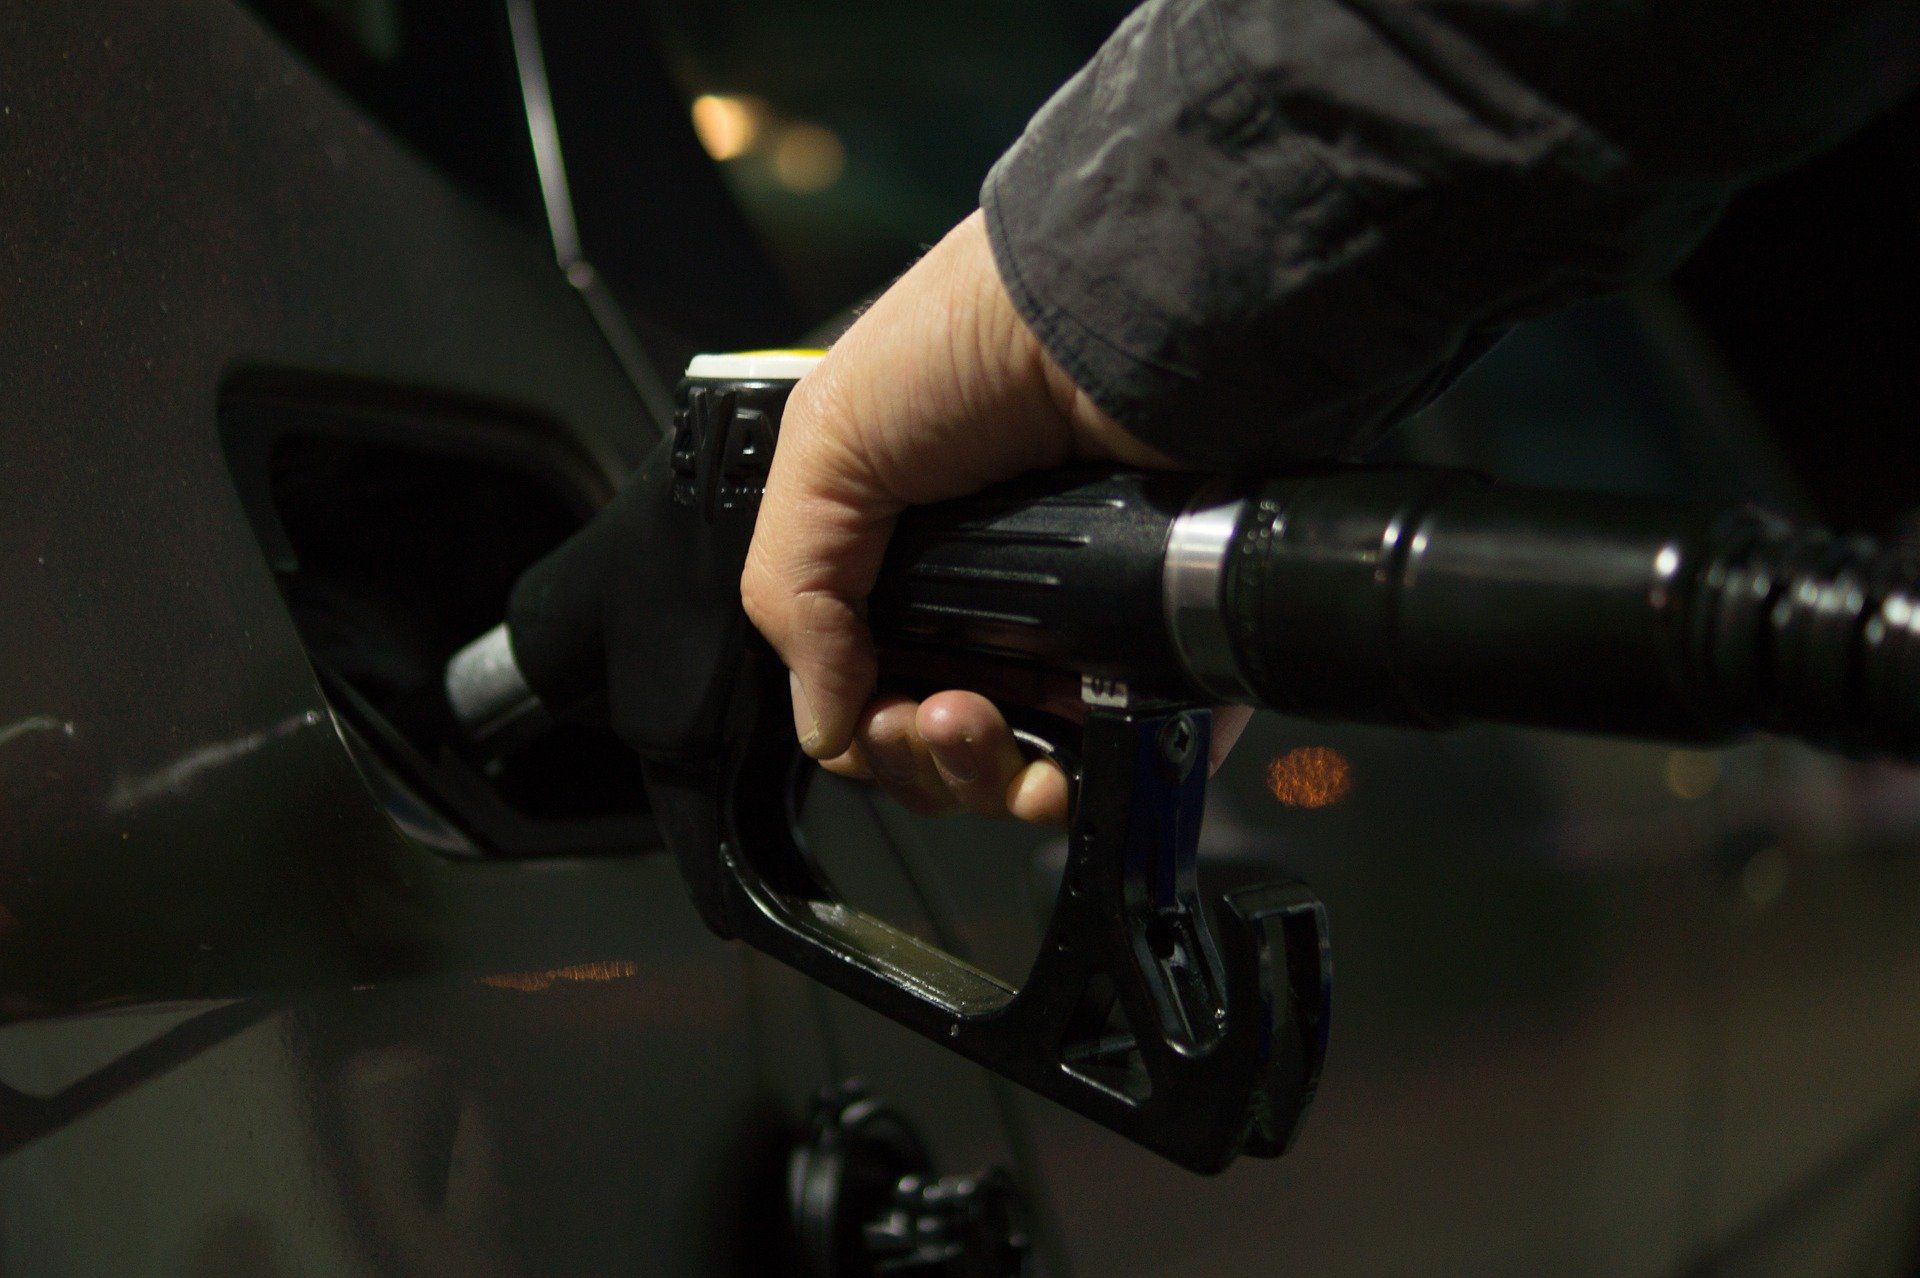 Fuel price July 13, 2022: Petrol Rs 96.72, diesel Rs 89.62 in Delhi